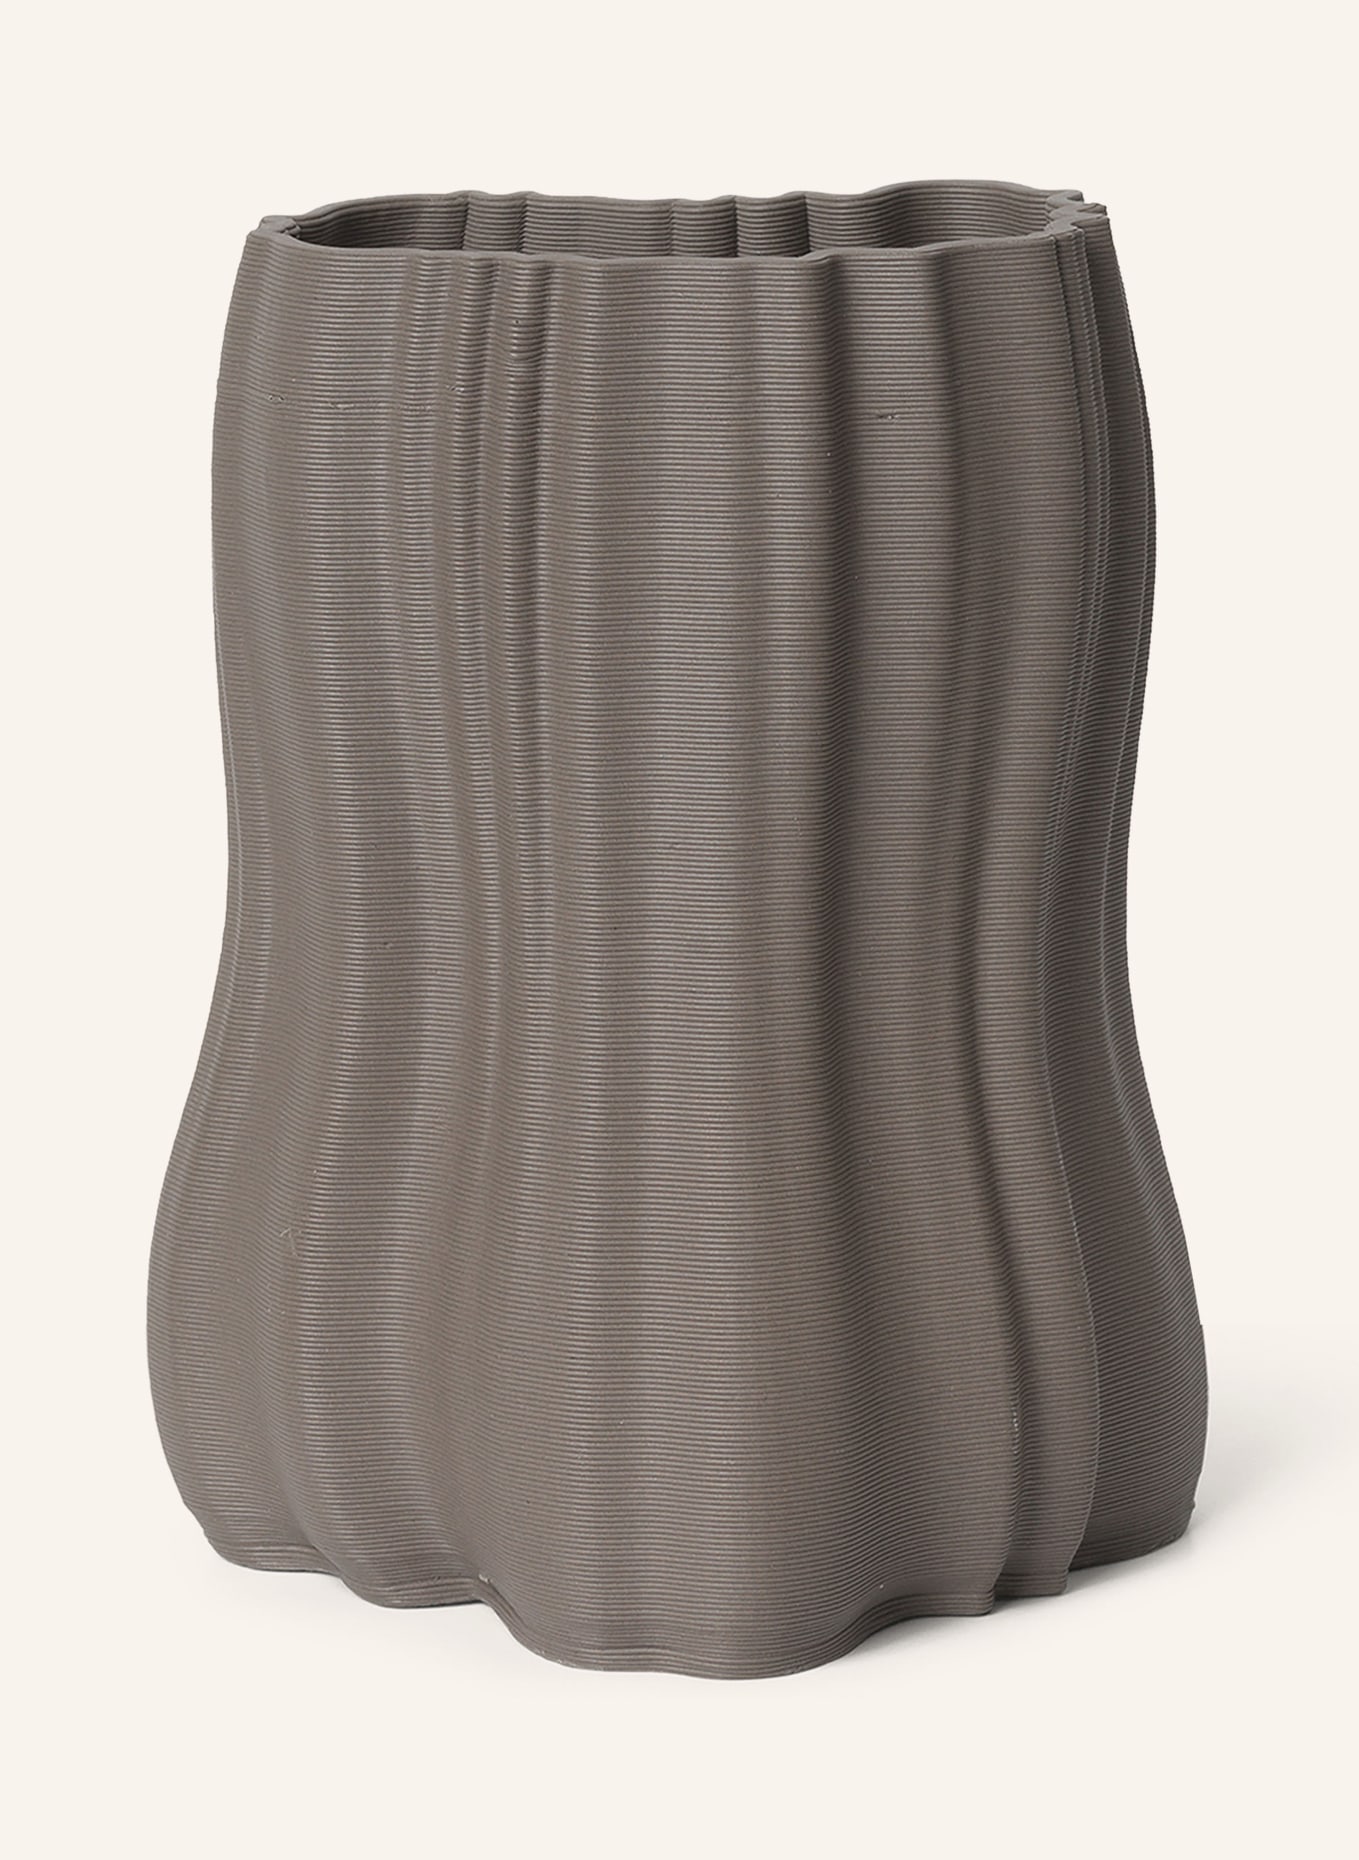 Ferm LIVING Vase MOIRE, Farbe: TAUPE (Bild 1)